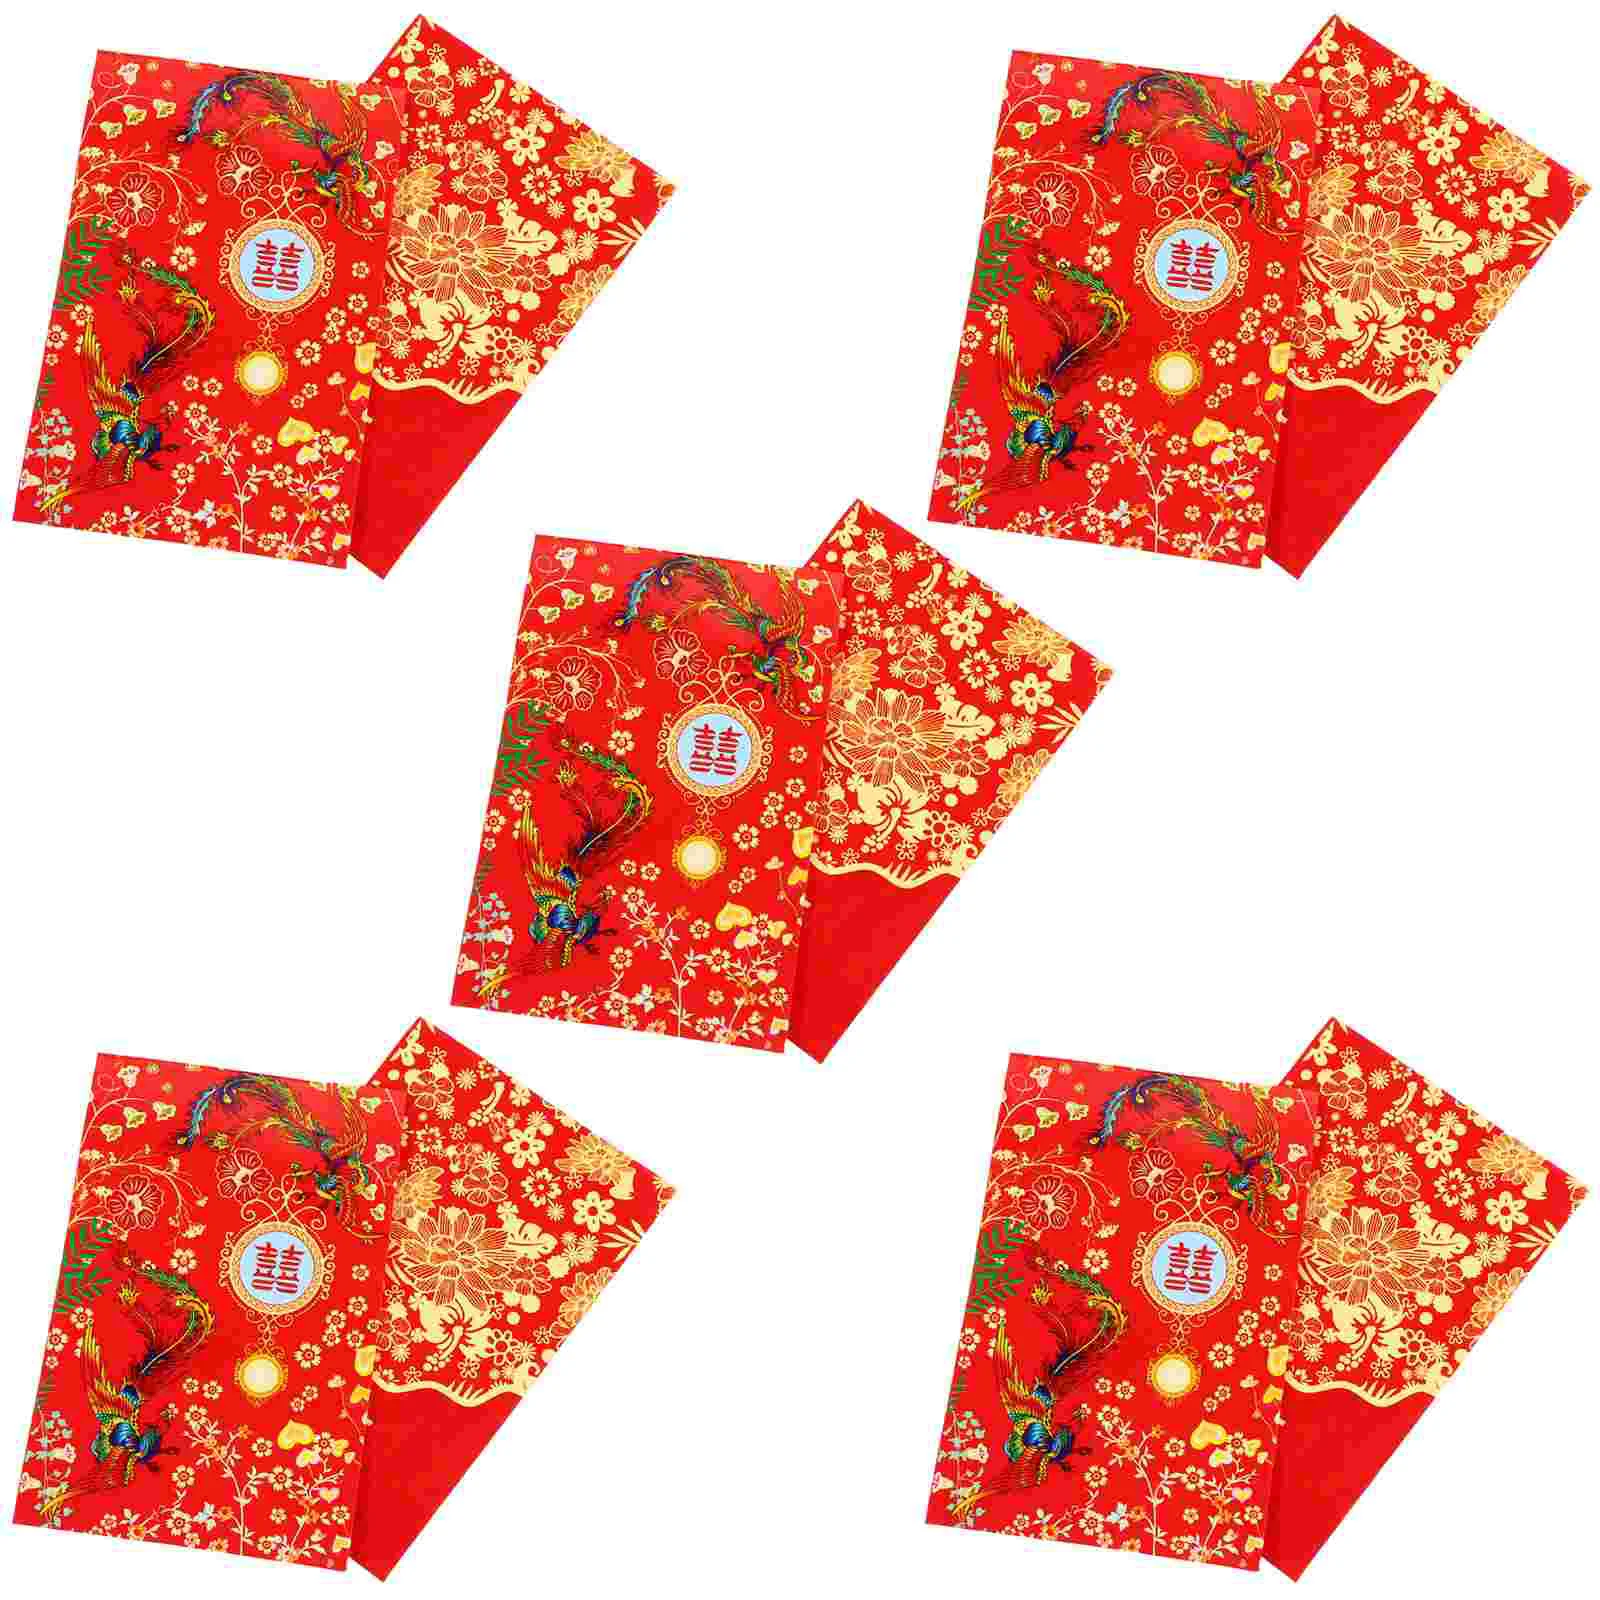 

Красные Свадебные китайские конверты для денег, конверты, подарочные пакеты, наличные деньги, карманные новые праздничные свадебные карманы Bao Hong Year Hongbao